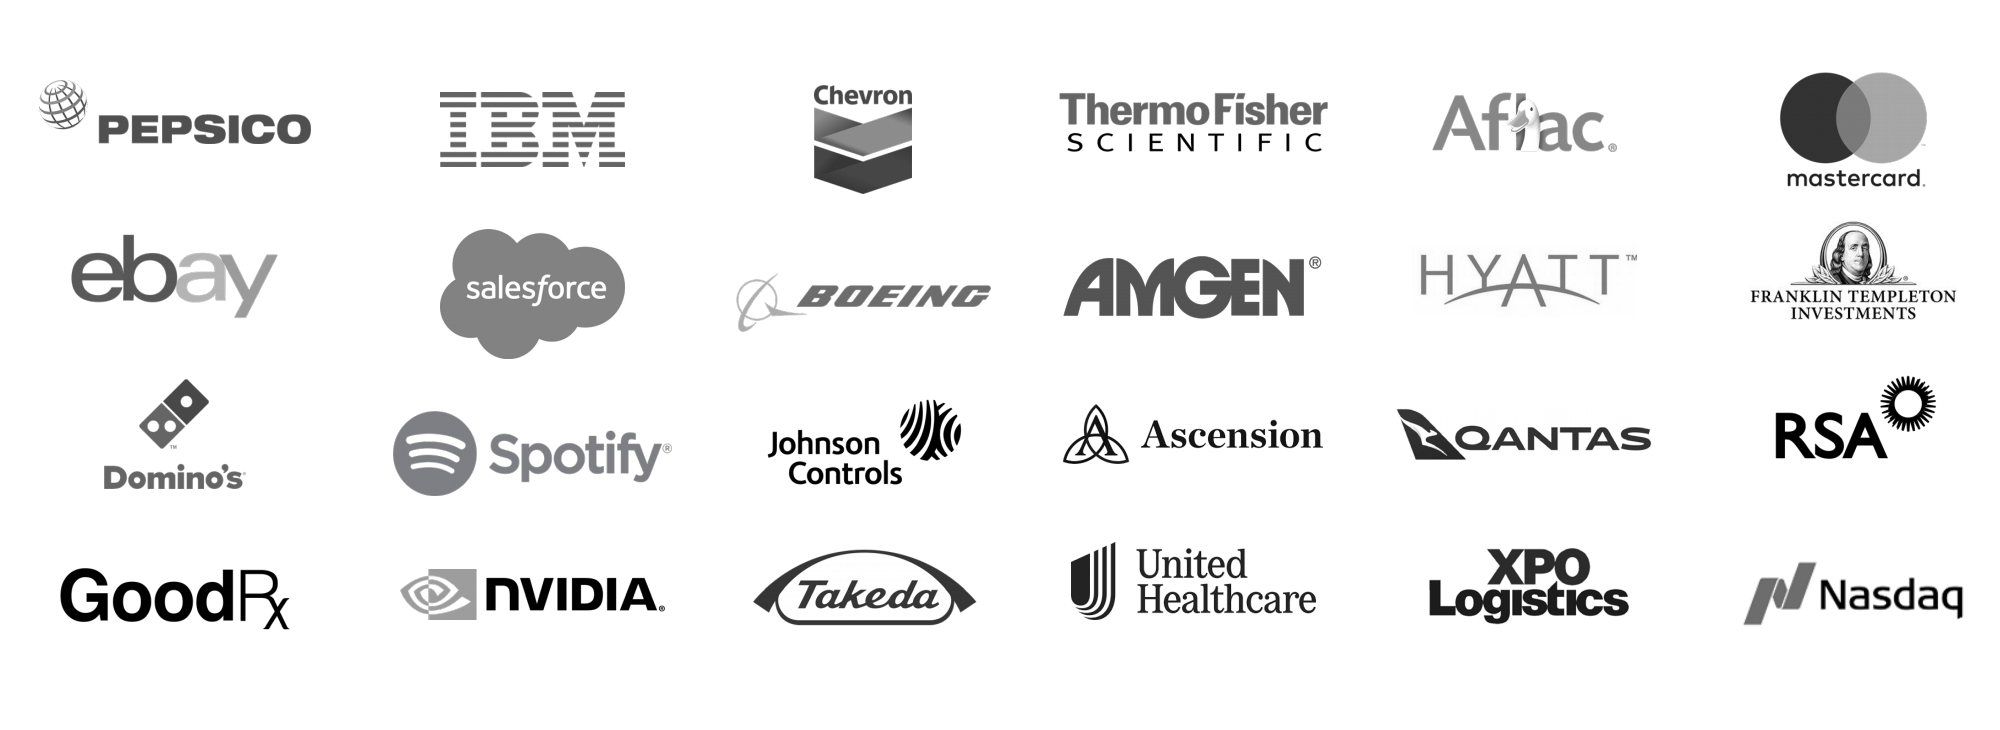 Логотипы клиентов компании. Источник: презентация компании, слайд 12